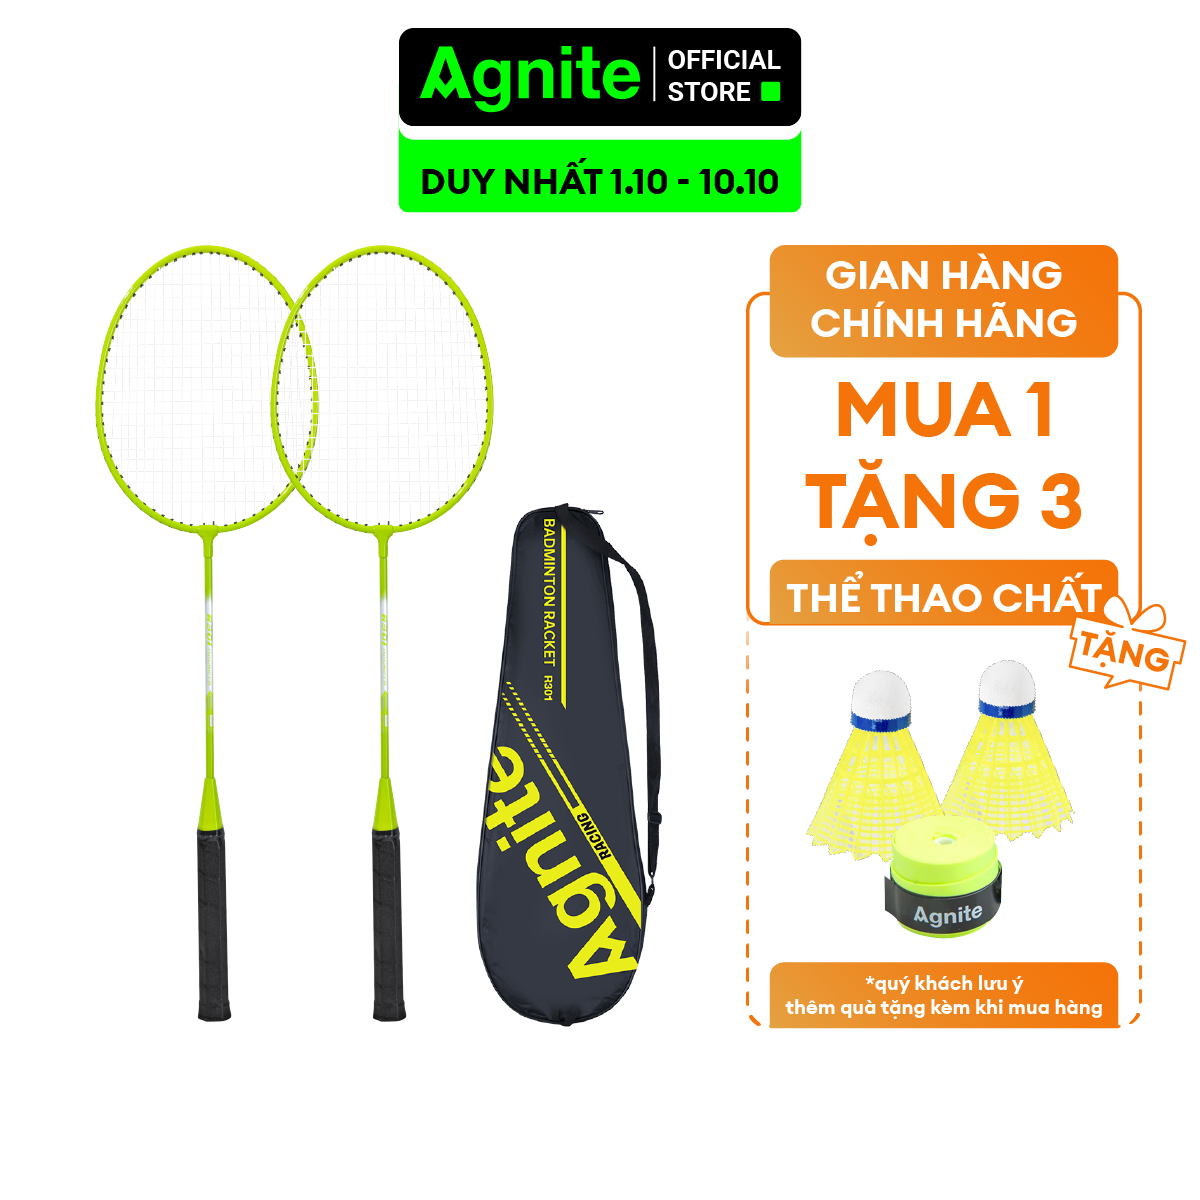 Bộ 2 vợt cầu lông giá rẻ chính hãng Agnite, bền, nhẹ, tặng kèm túi vợt và quả cầu lông - ER301/ER302